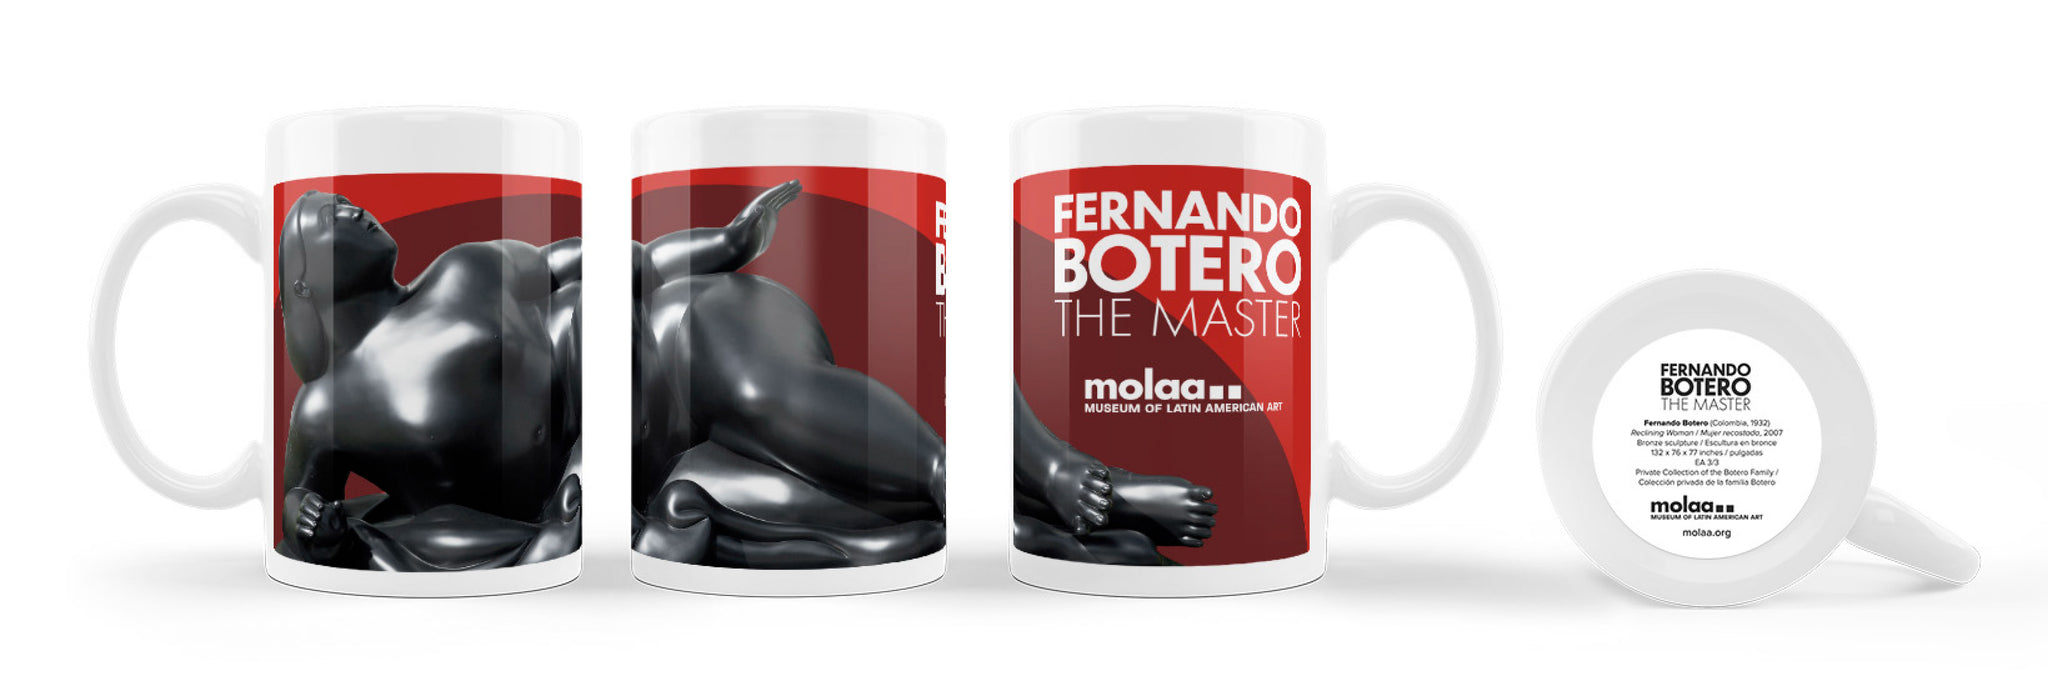 Fernando Botero: El Maestro exhibition - Mug 15oz